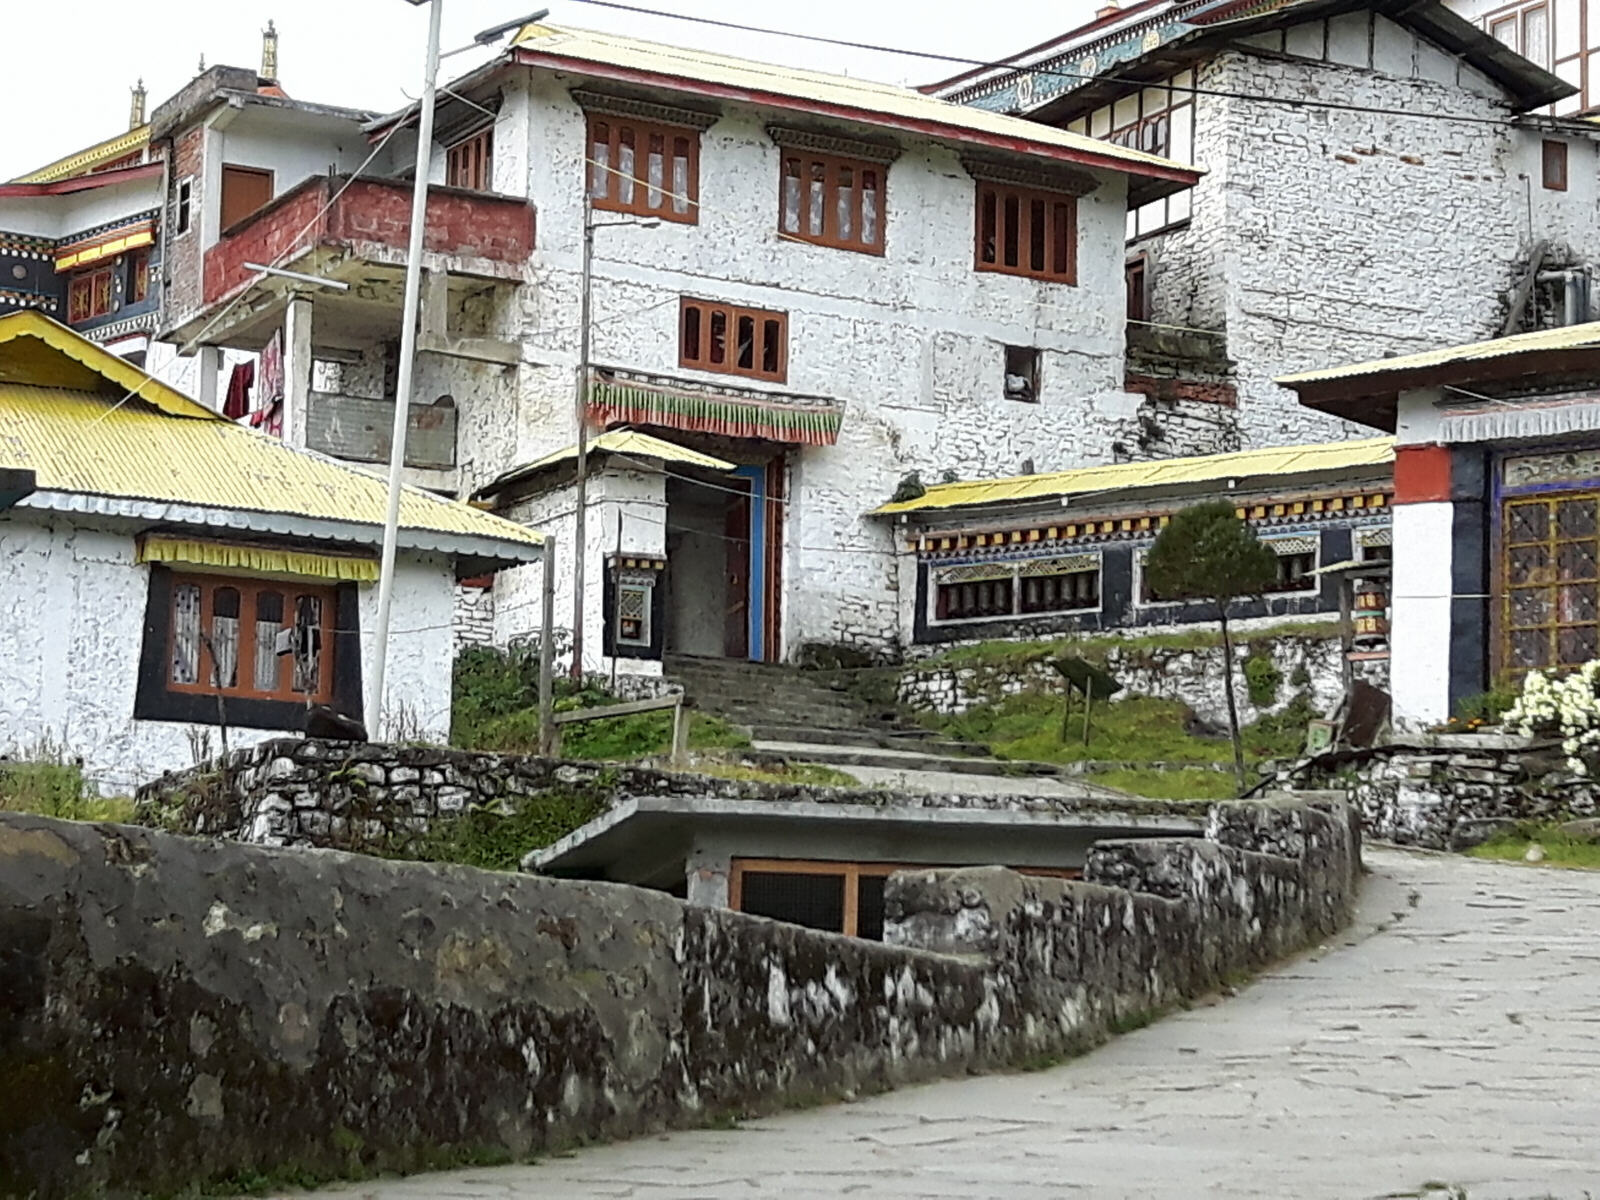 Monastery buildings in Tawang Gompa